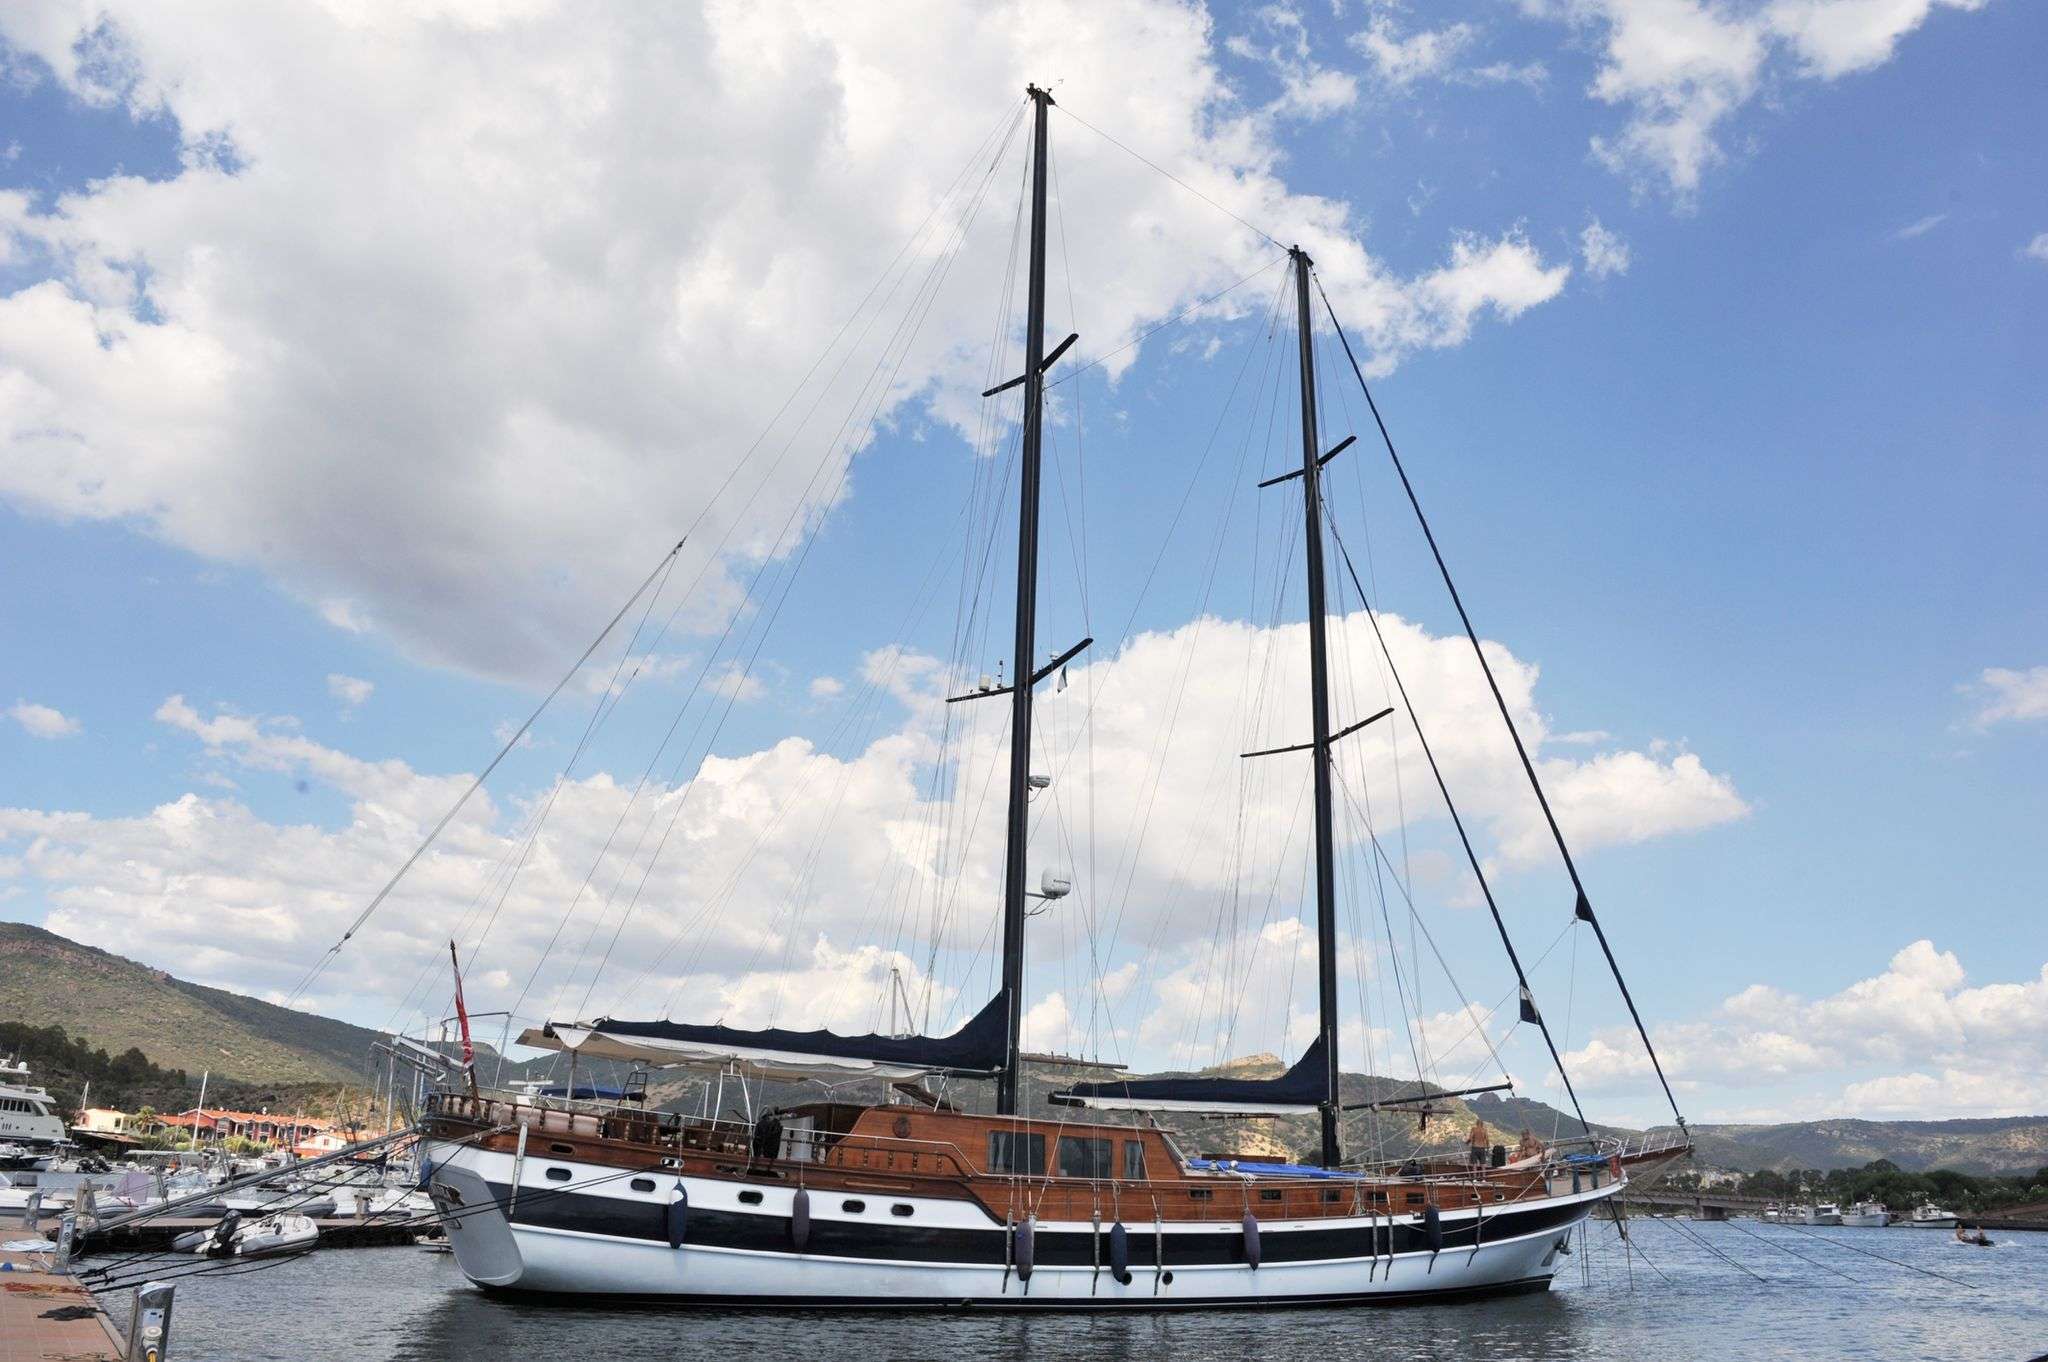 Elianora  - Yacht Charter La Savina & Boat hire in W. Med -Naples/Sicily, W. Med -Riviera/Cors/Sard., W. Med - Spain/Balearics 1